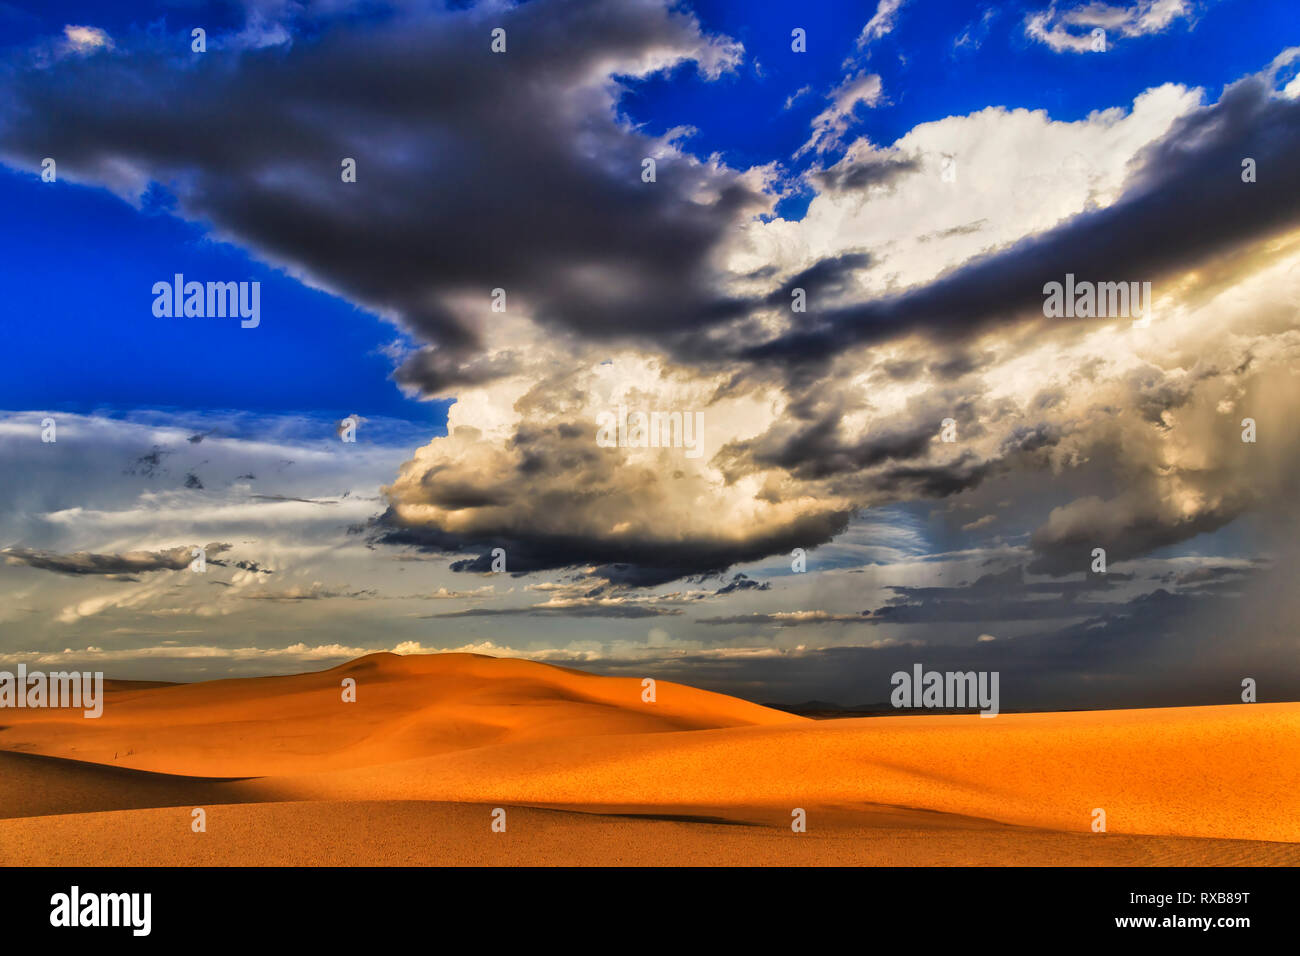 Sonnendurchflutete trockene Wüste bei Sonnenuntergang bei Unwetter mit riesigen geformte Wolke über Sanddünen und den Horizont in den blauen Himmel - Stockton Strand von Hunter region, Australien. Stockfoto